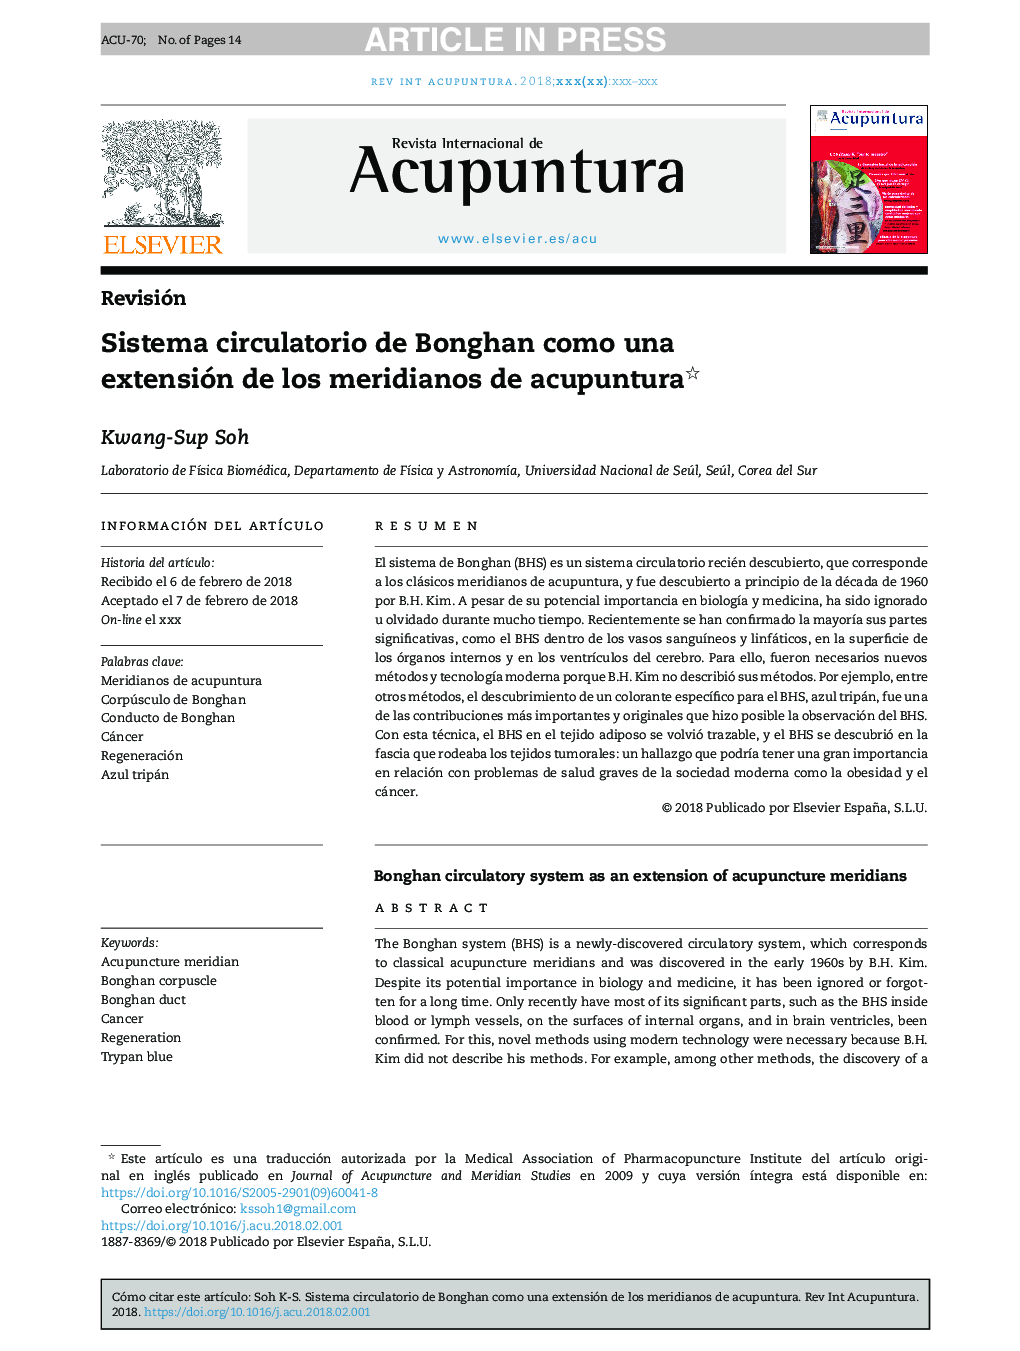 Sistema circulatorio de Bonghan como una extensión de los meridianos de acupuntura